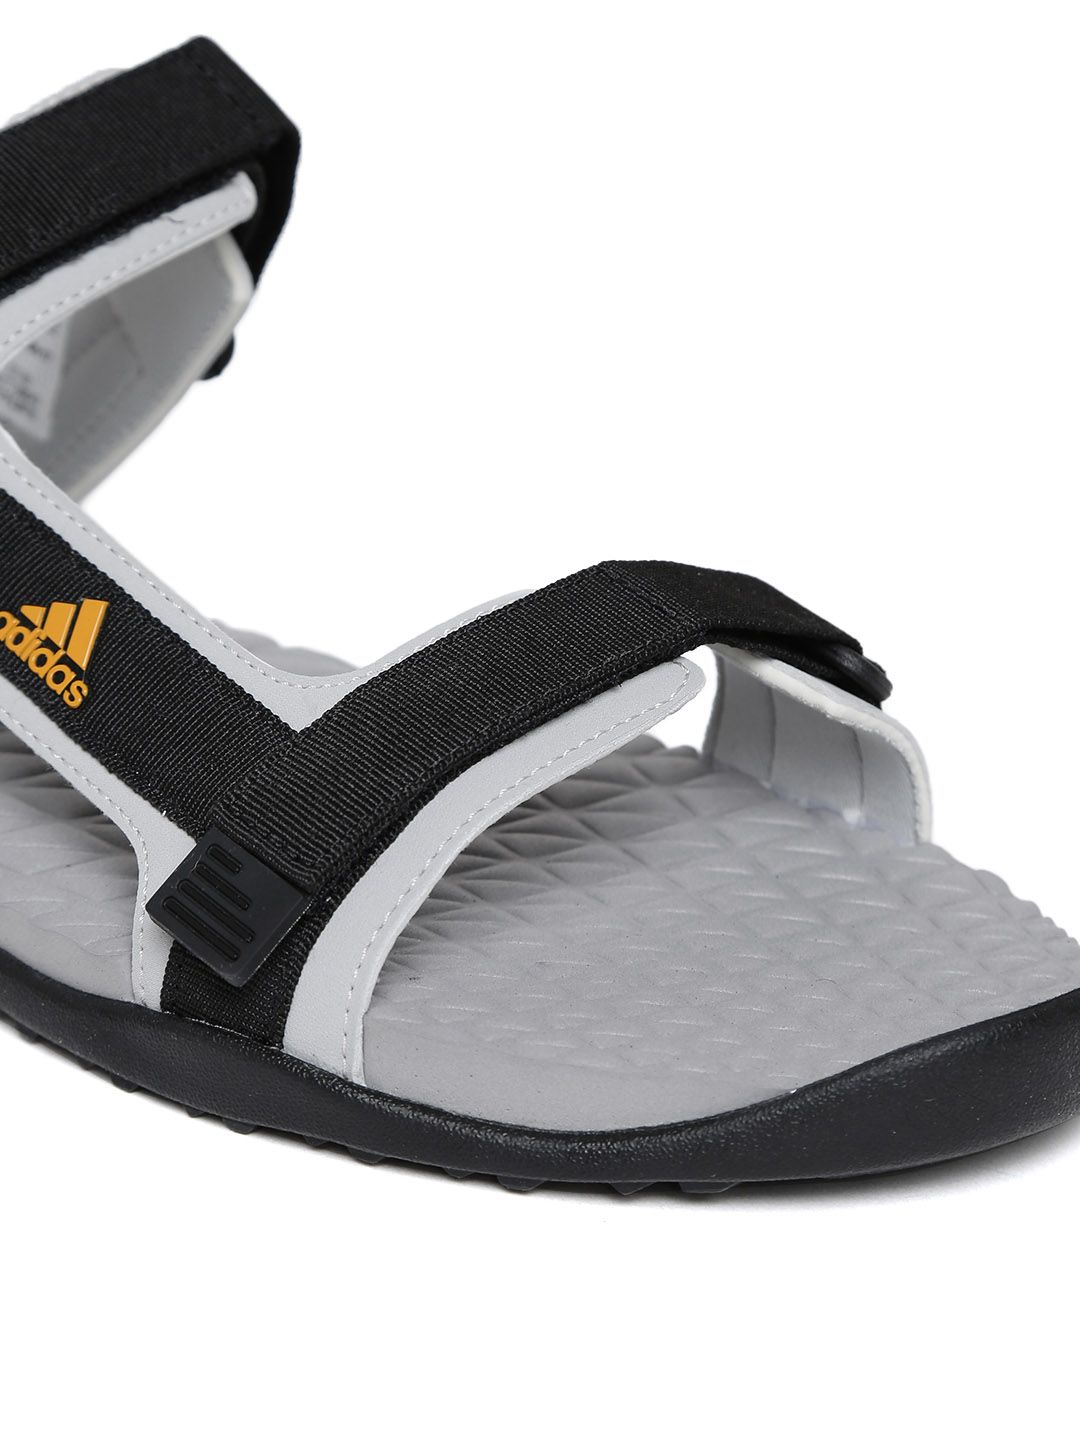 adidas sandals price list - Entrega 